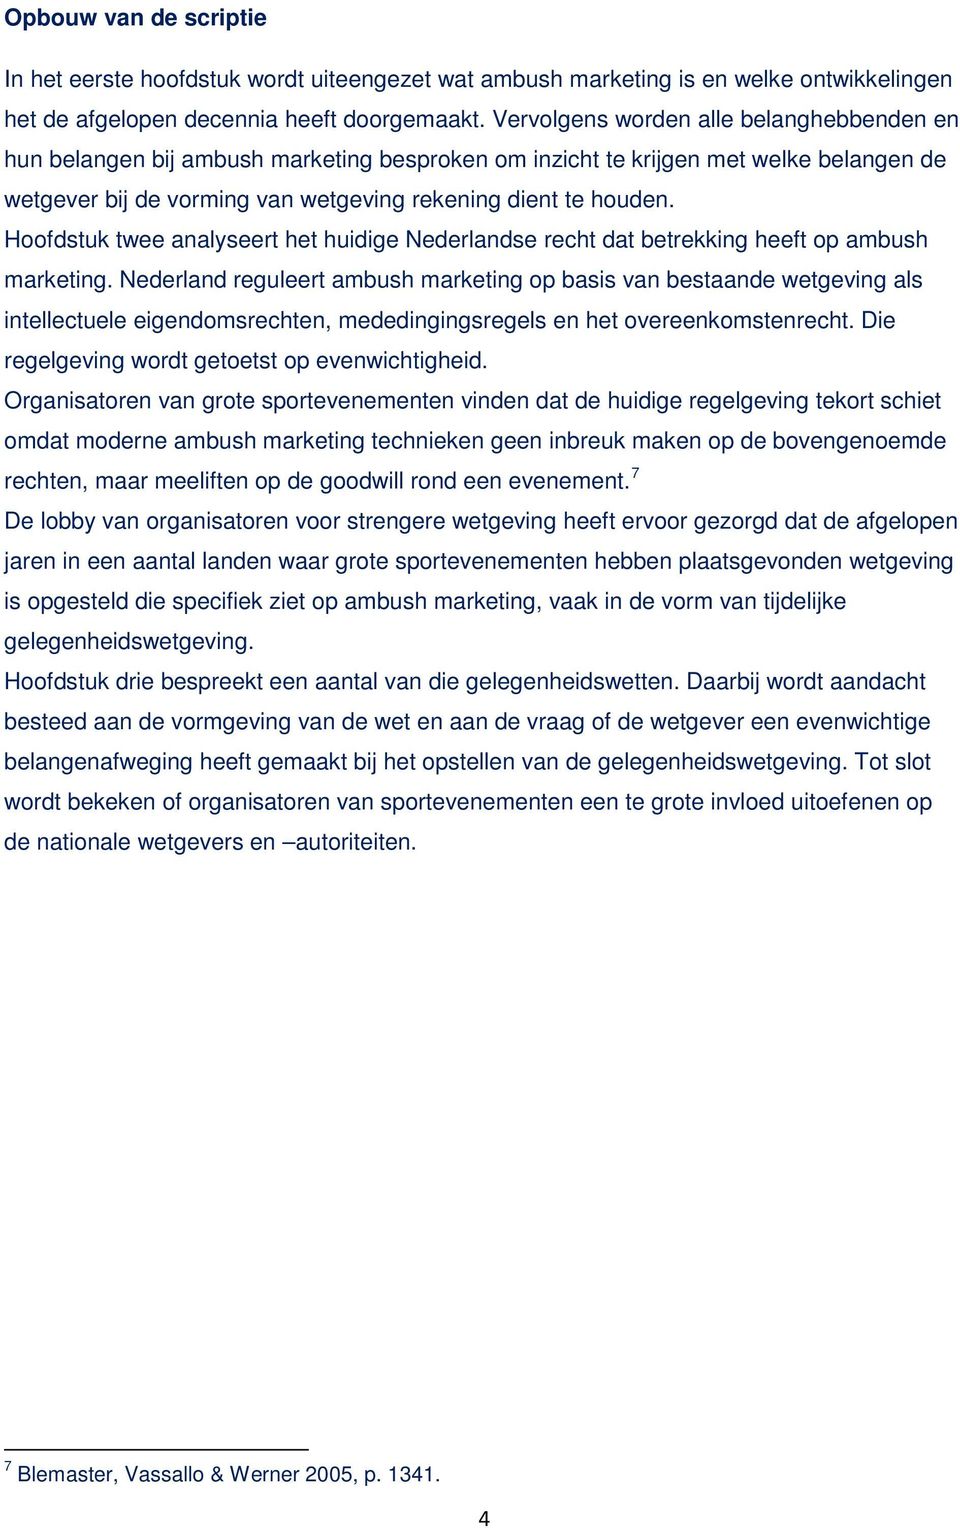 Hoofdstuk twee analyseert het huidige Nederlandse recht dat betrekking heeft op ambush marketing.